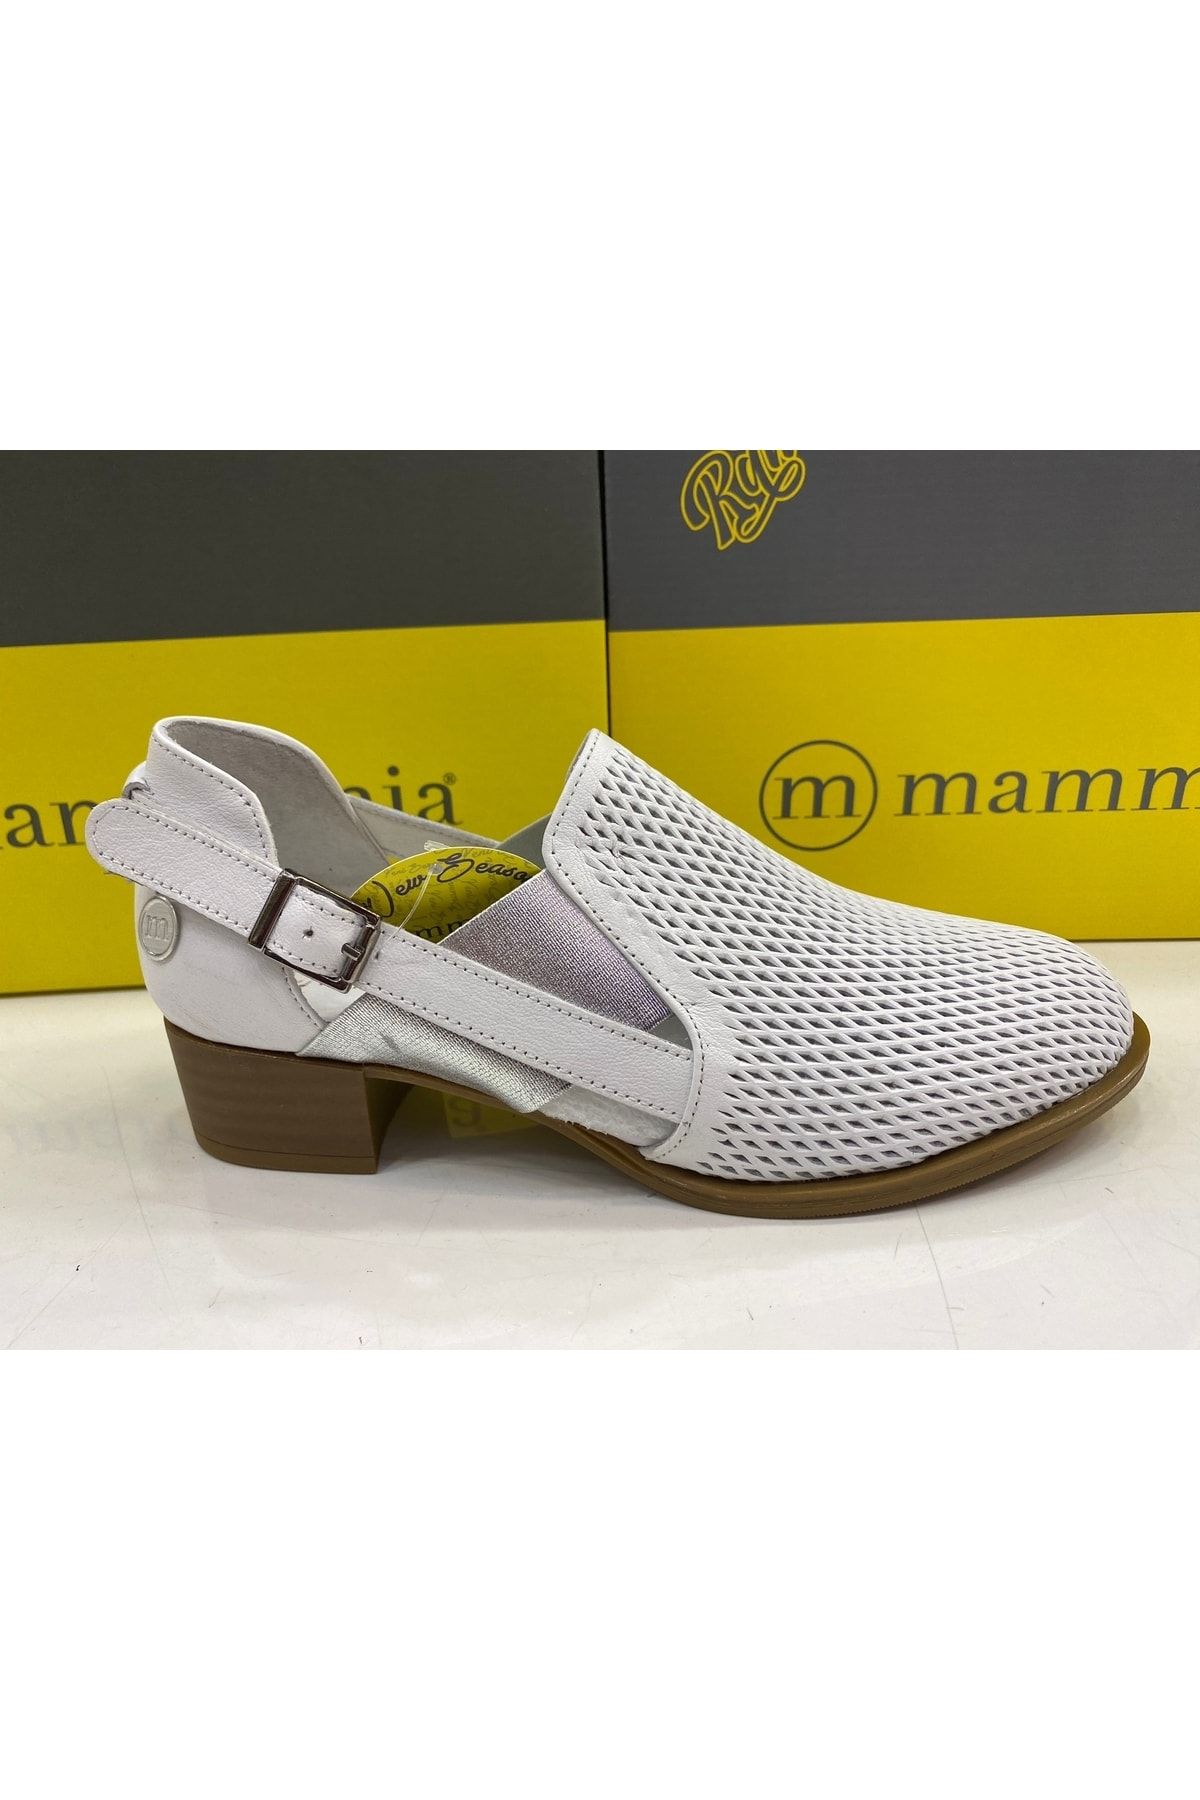 Mammamia D22ya-490 Hakiki Deri Kadın Ayakkabı - Beyaz